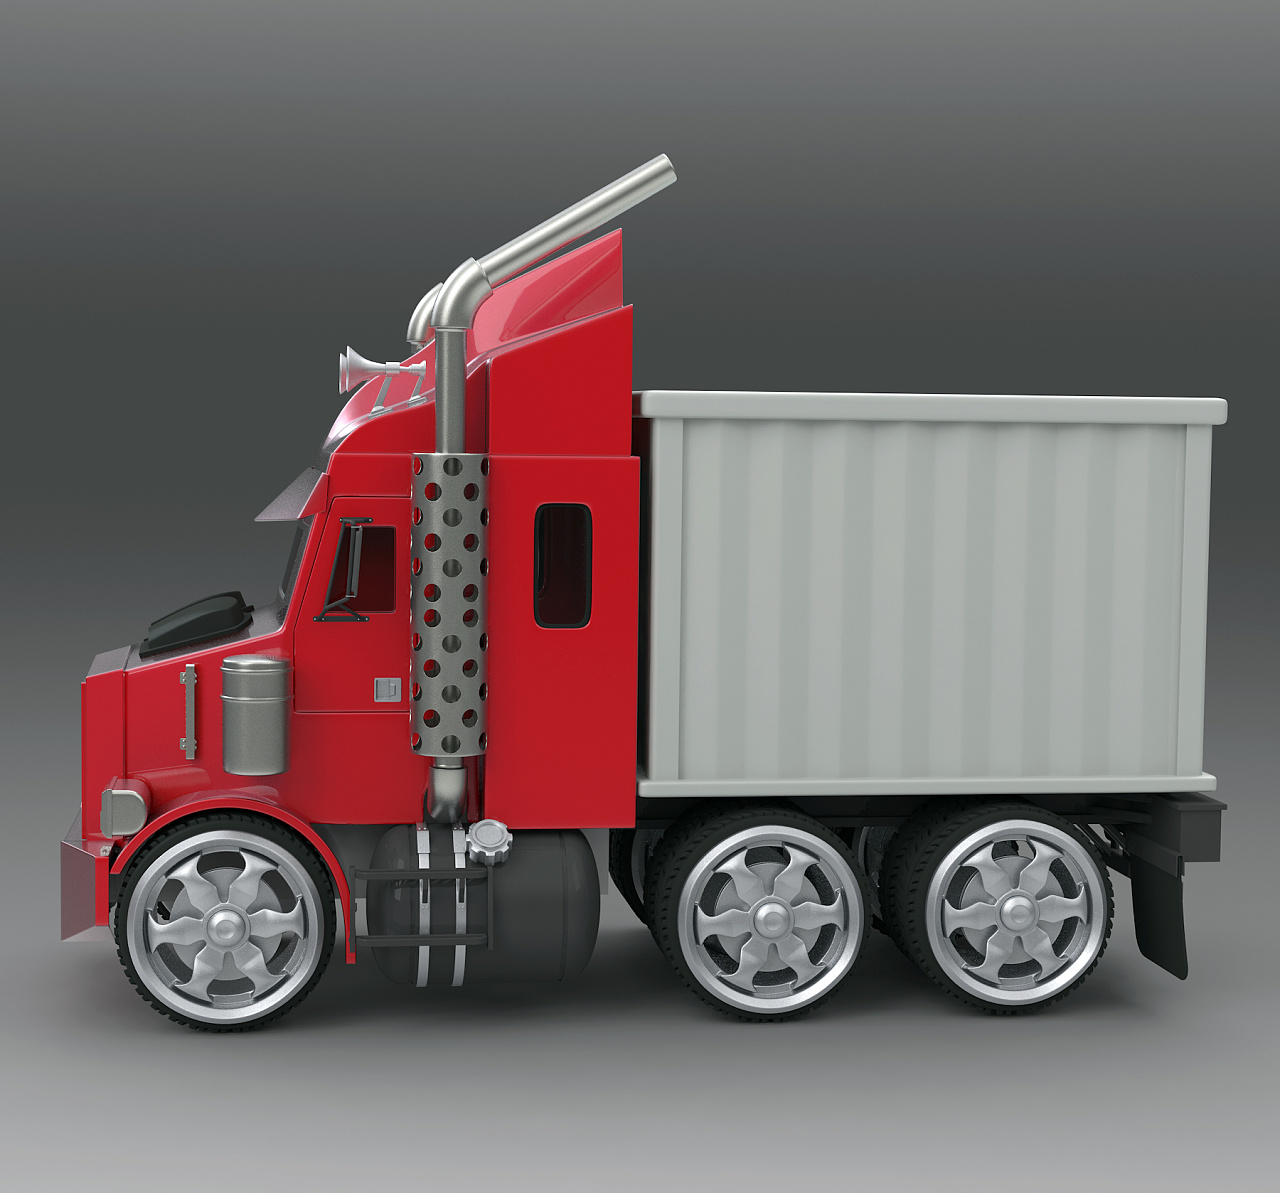 木制手工卡车玩具套组带给孩子们无限创造力 - 普象网